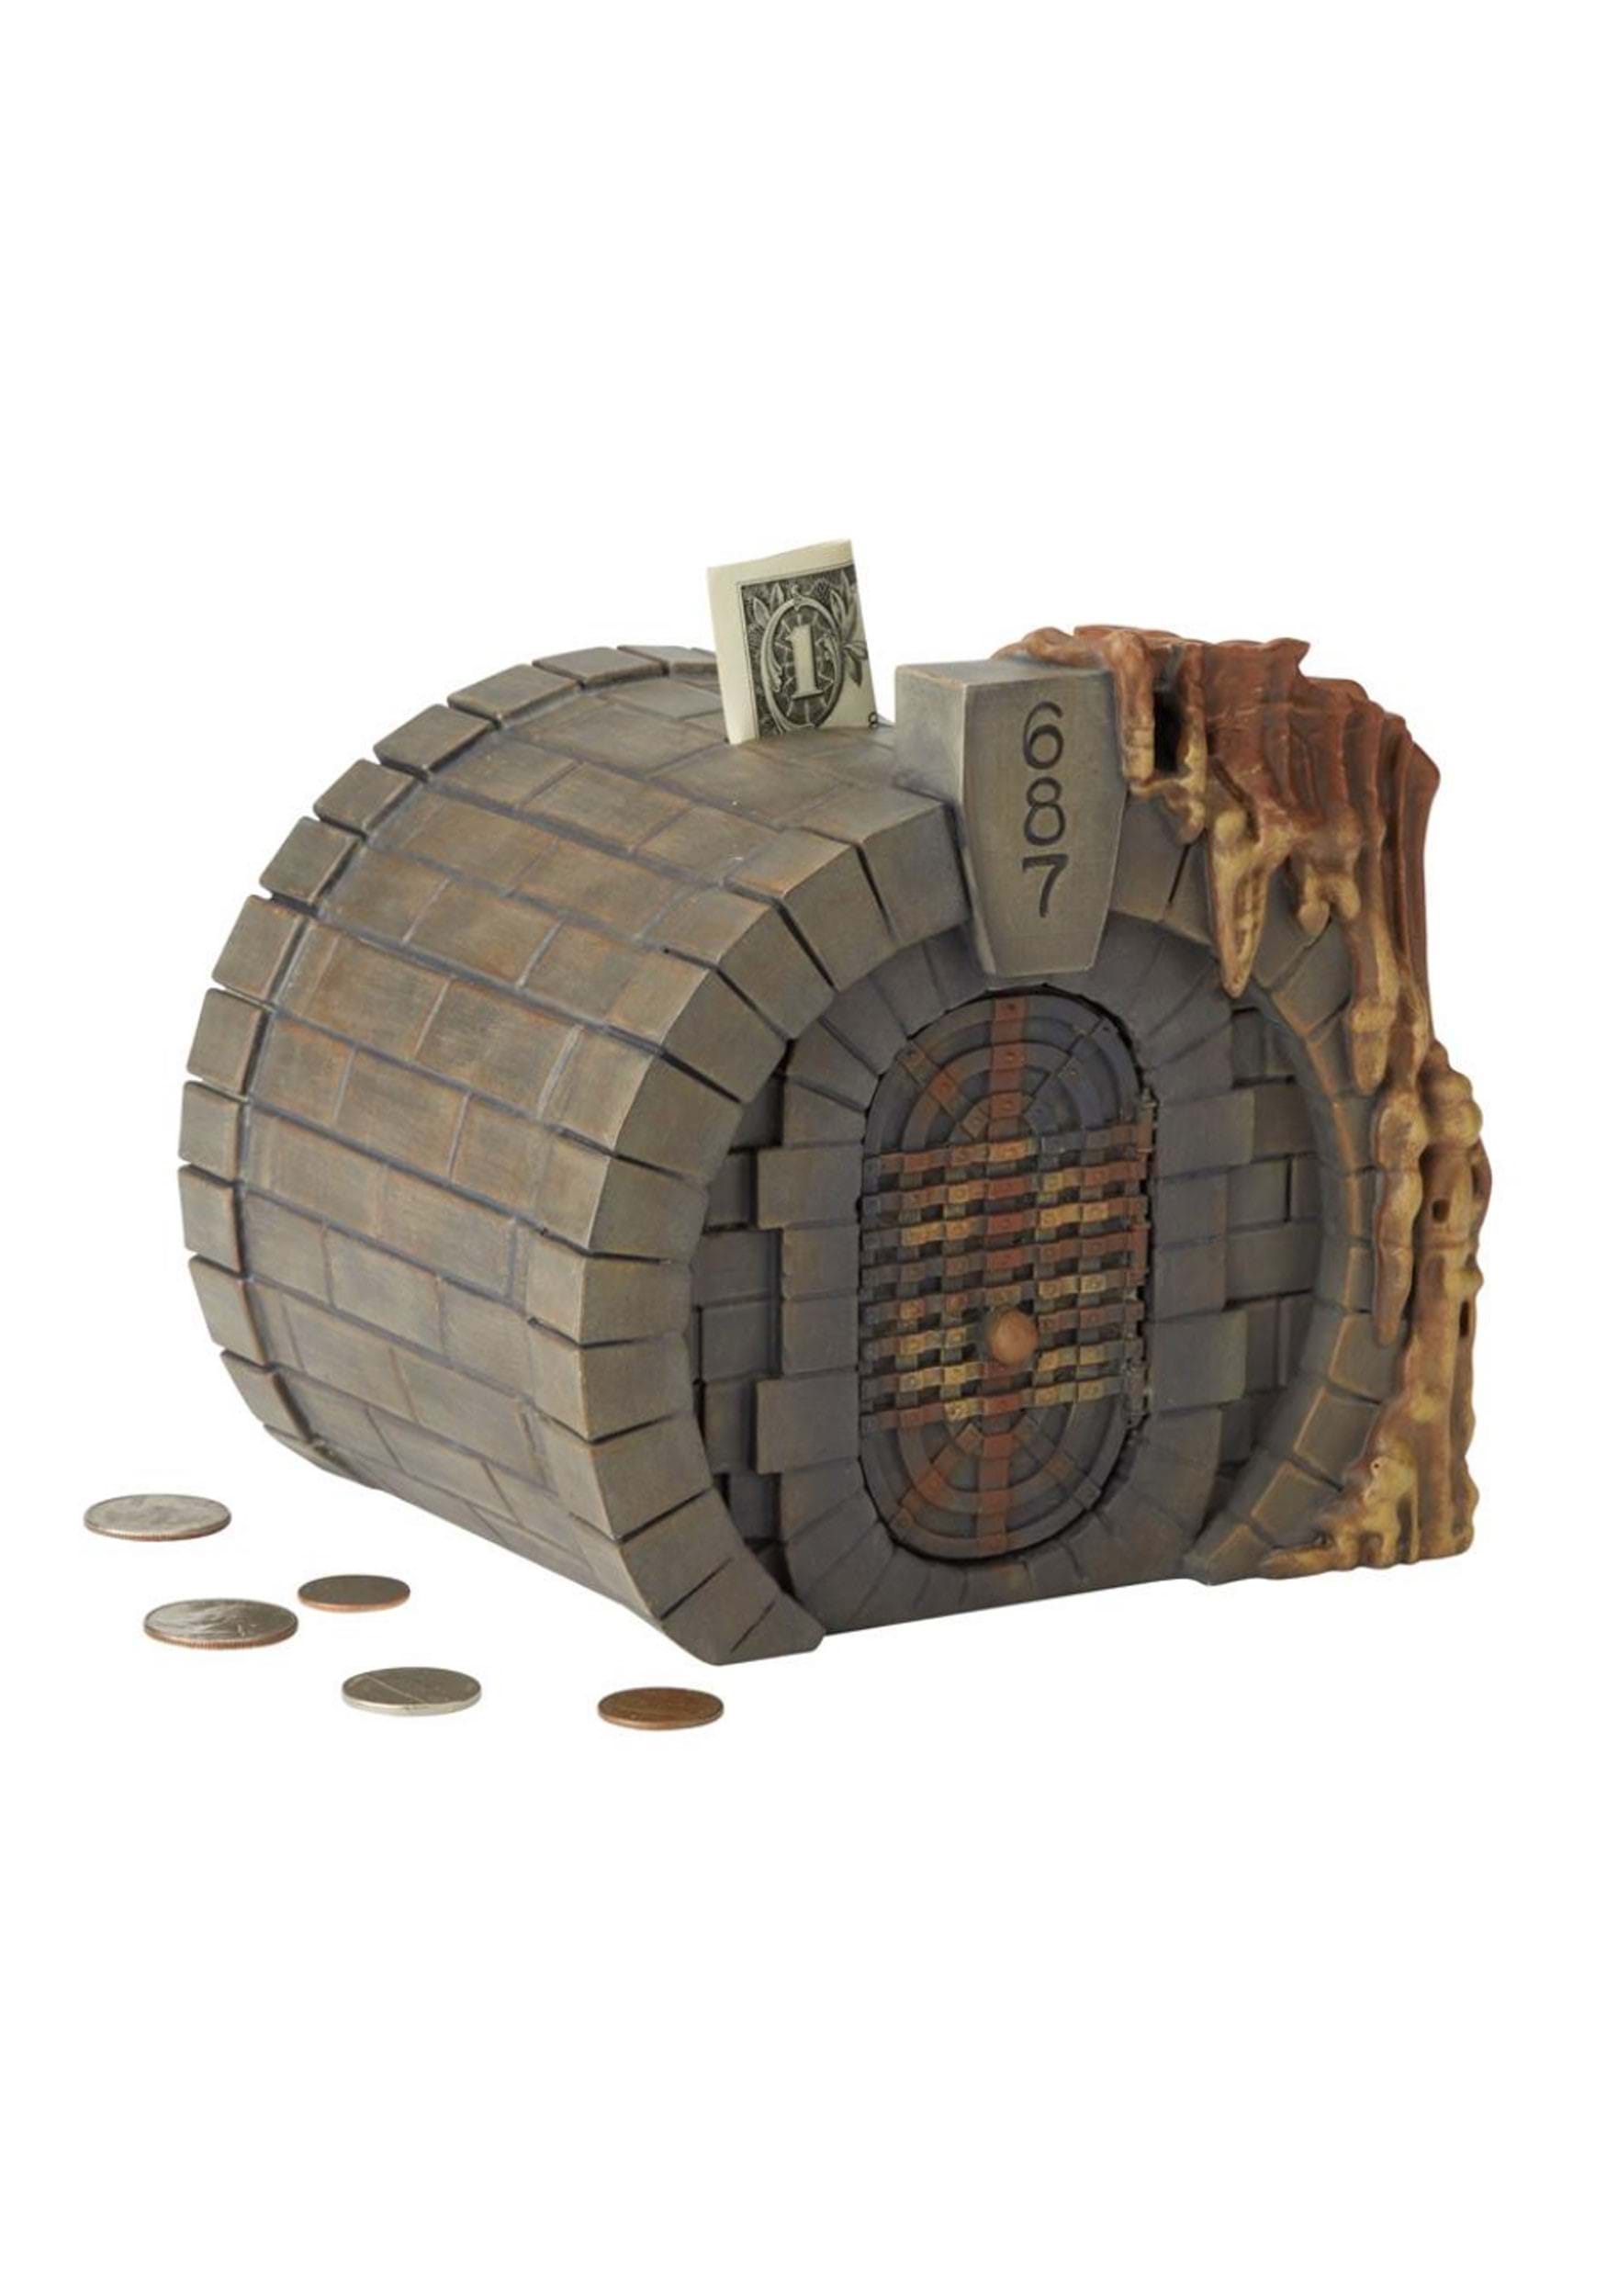 Gringott's Vault Coin Bank By Department 56